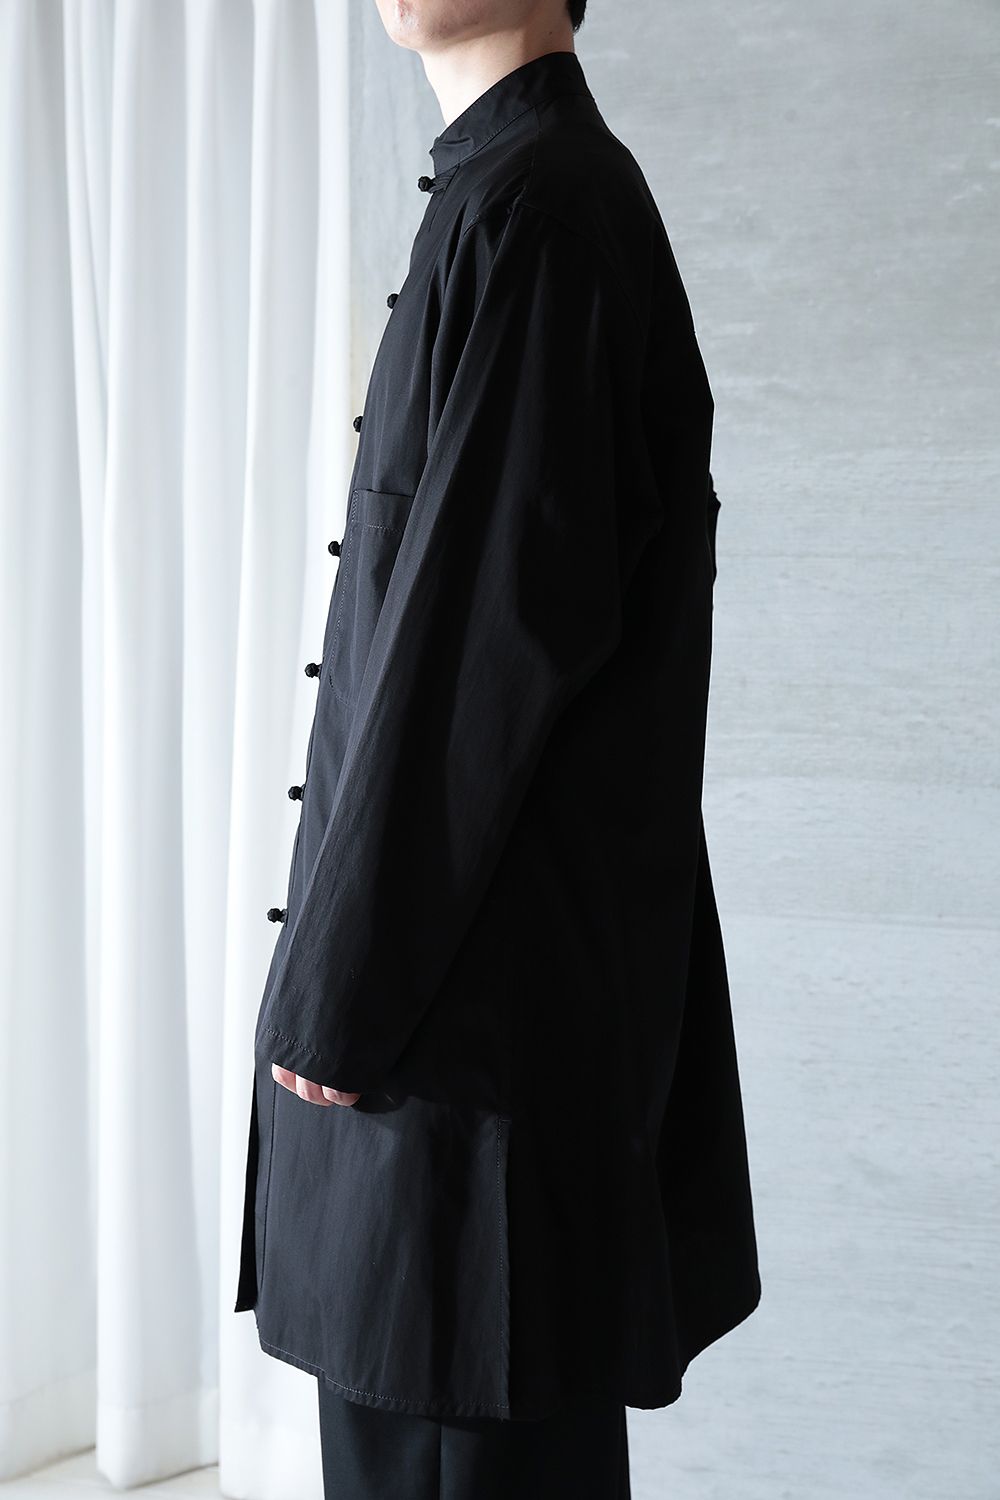 yohji yamamoto BIG 環縫いシャツ 黒 サイズ3